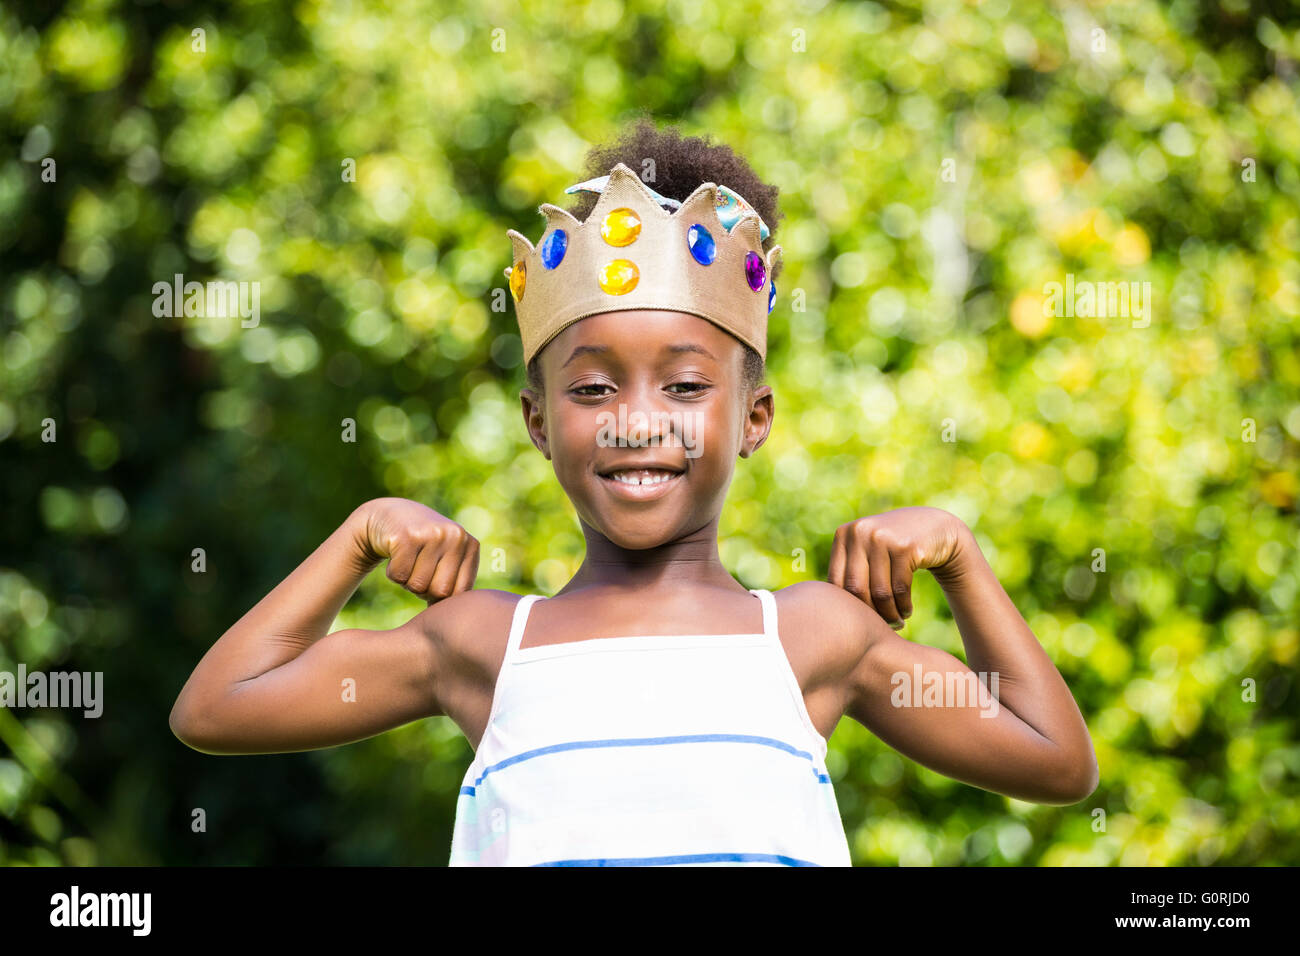 Cute girl de race mixte tenant une couronne et montrant ses biceps Banque D'Images